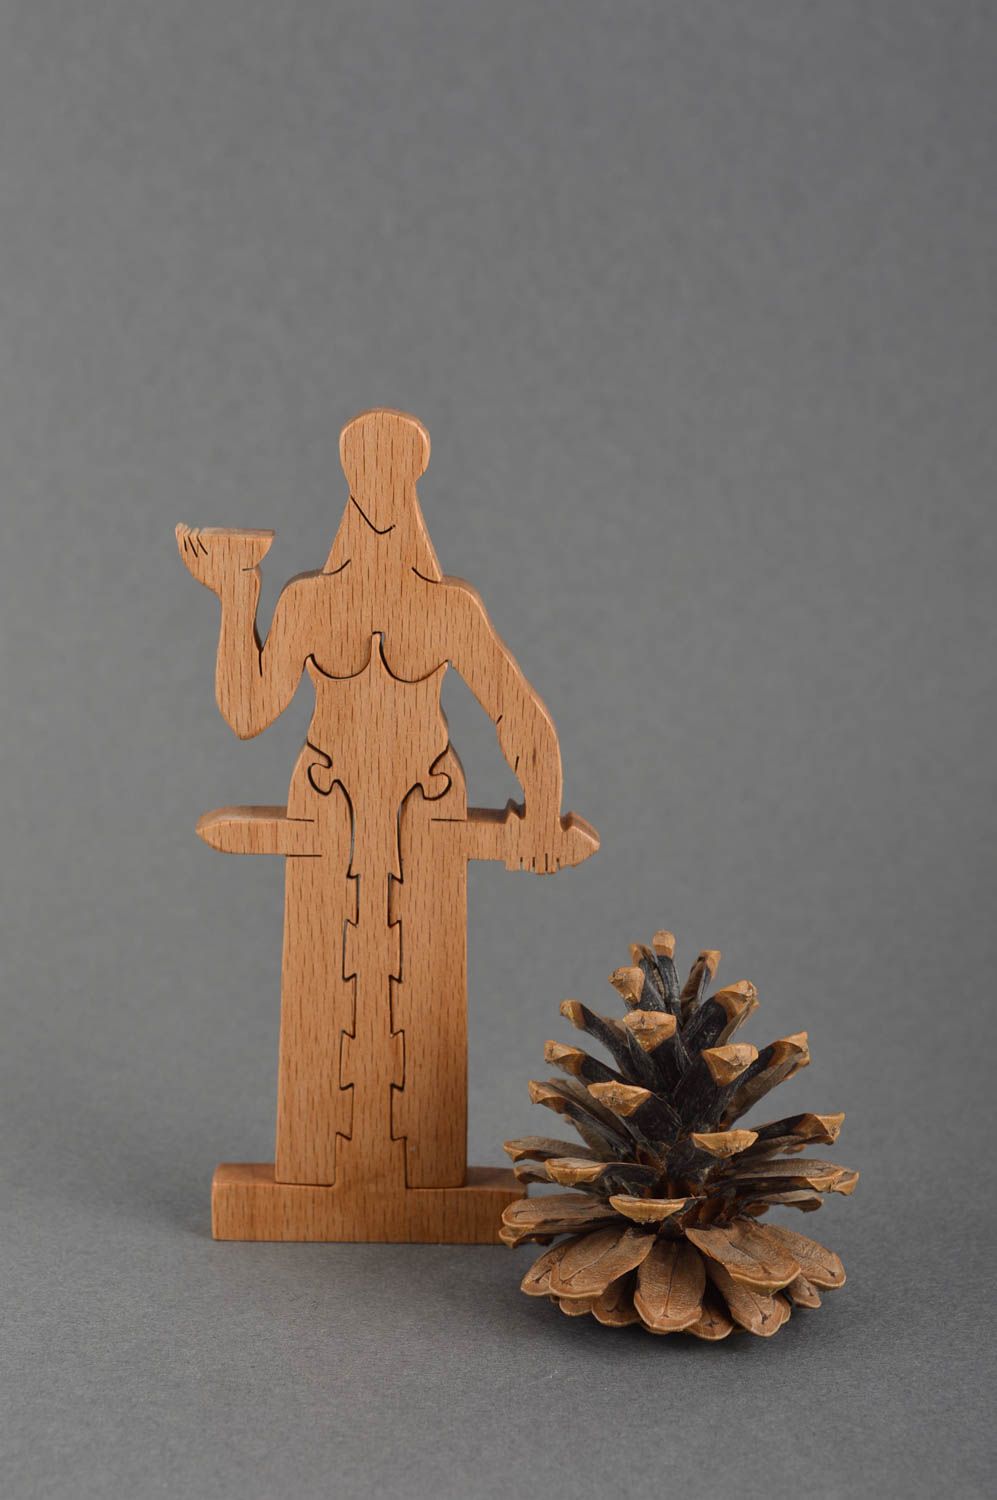 Пазлы для детей ручной работы игра пазлы деревянная детская игрушка Человек фото 1